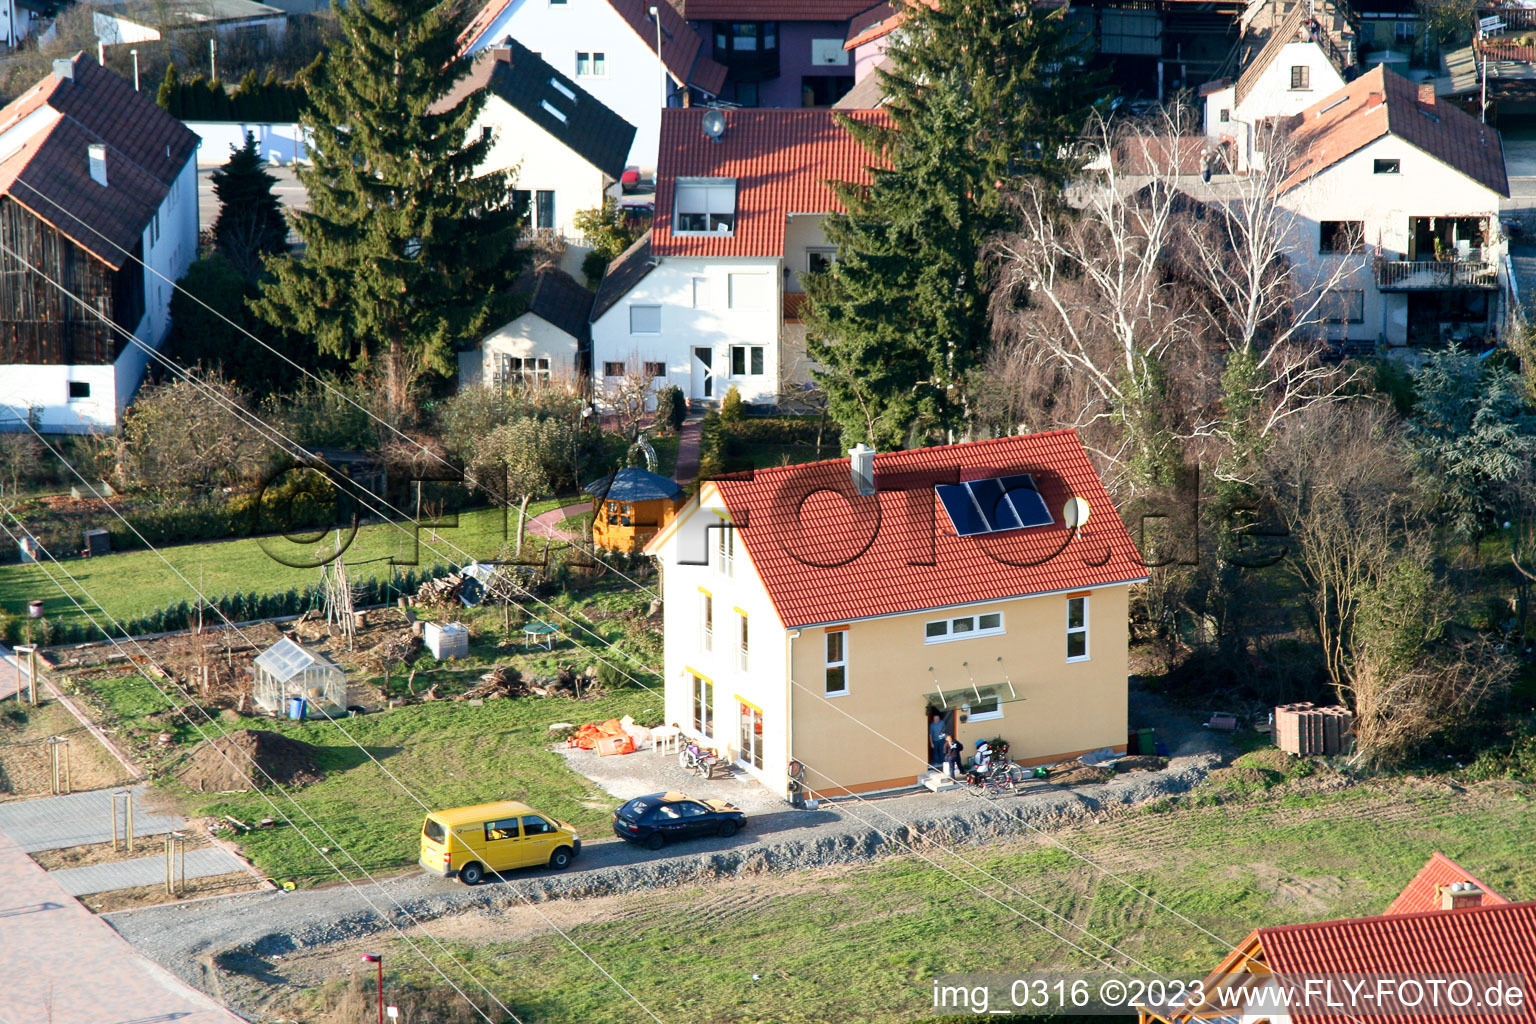 Rheinzabern Neubaugebiet An den Tongruben im Bundesland Rheinland-Pfalz, Deutschland von einer Drohne aus